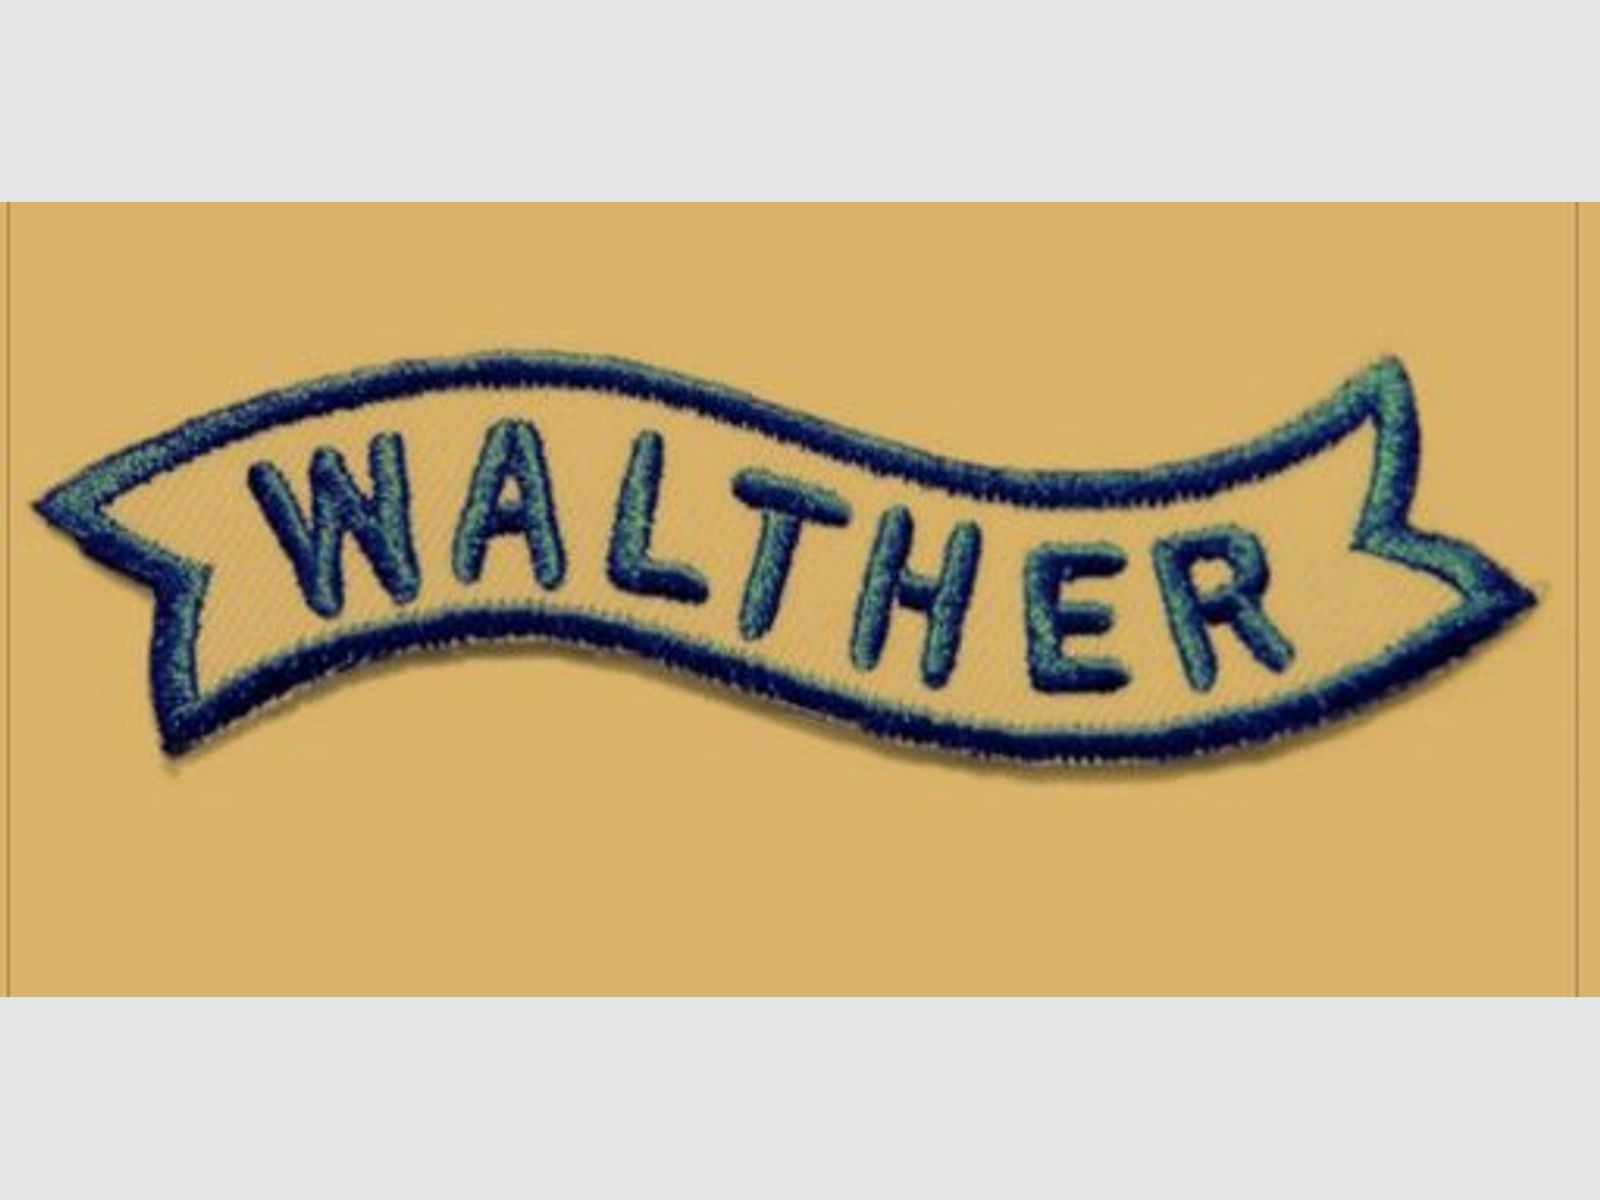 AUSVERKAUF! Patch "Walther", länglich, ca. 8cm